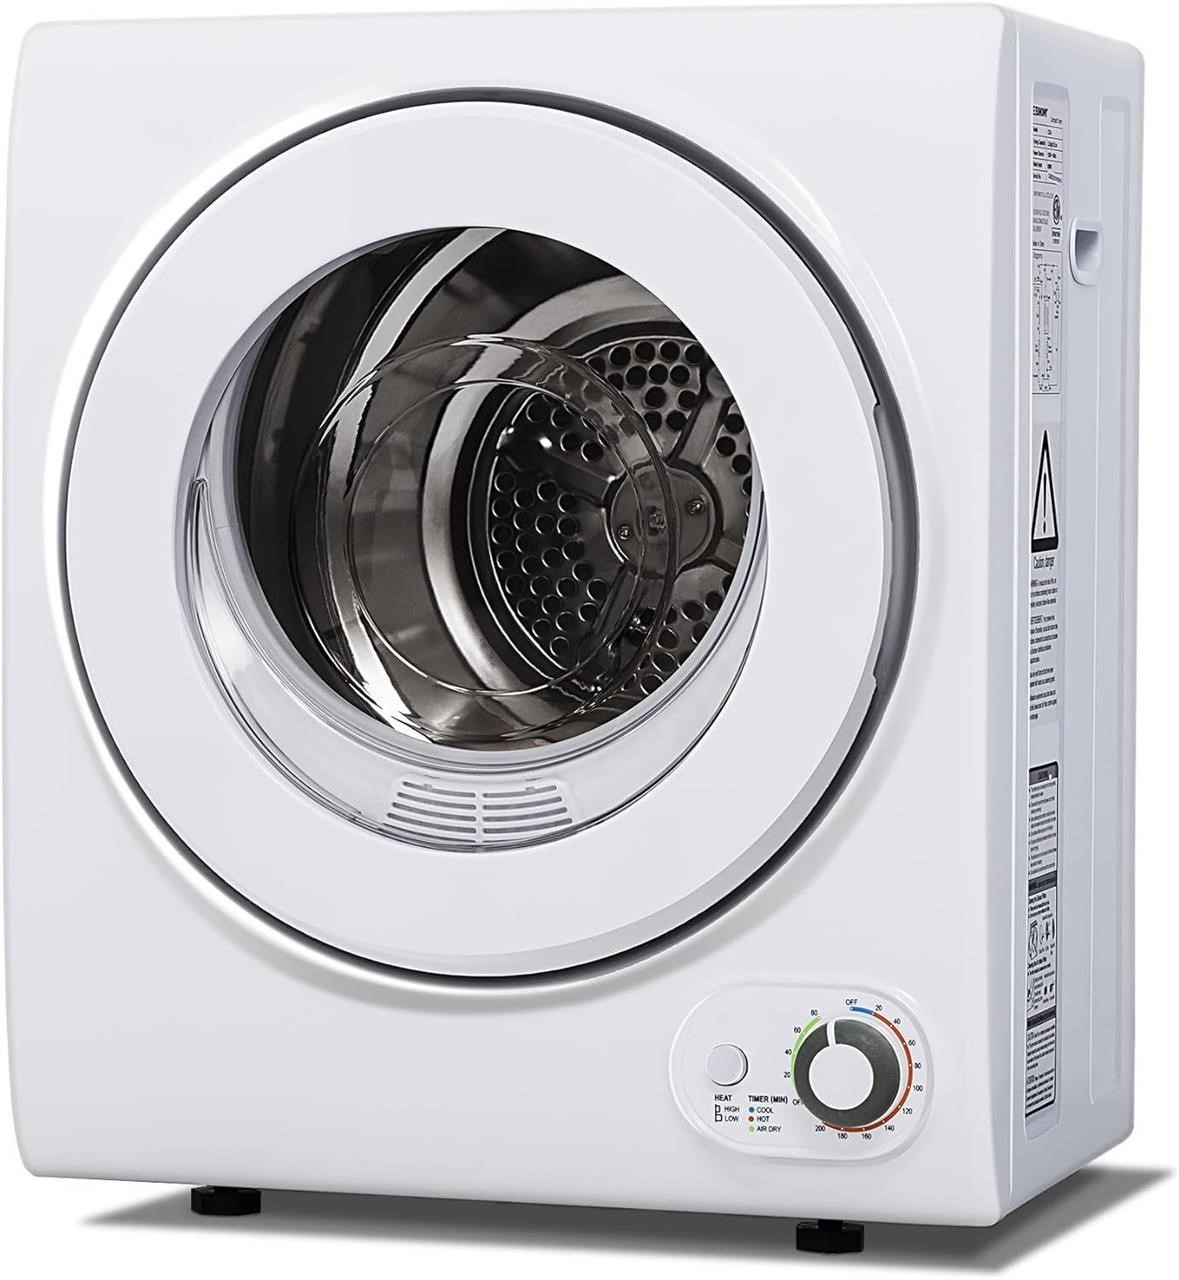 Euhomy 110V Portable Clothes Dryer *READ DESC*